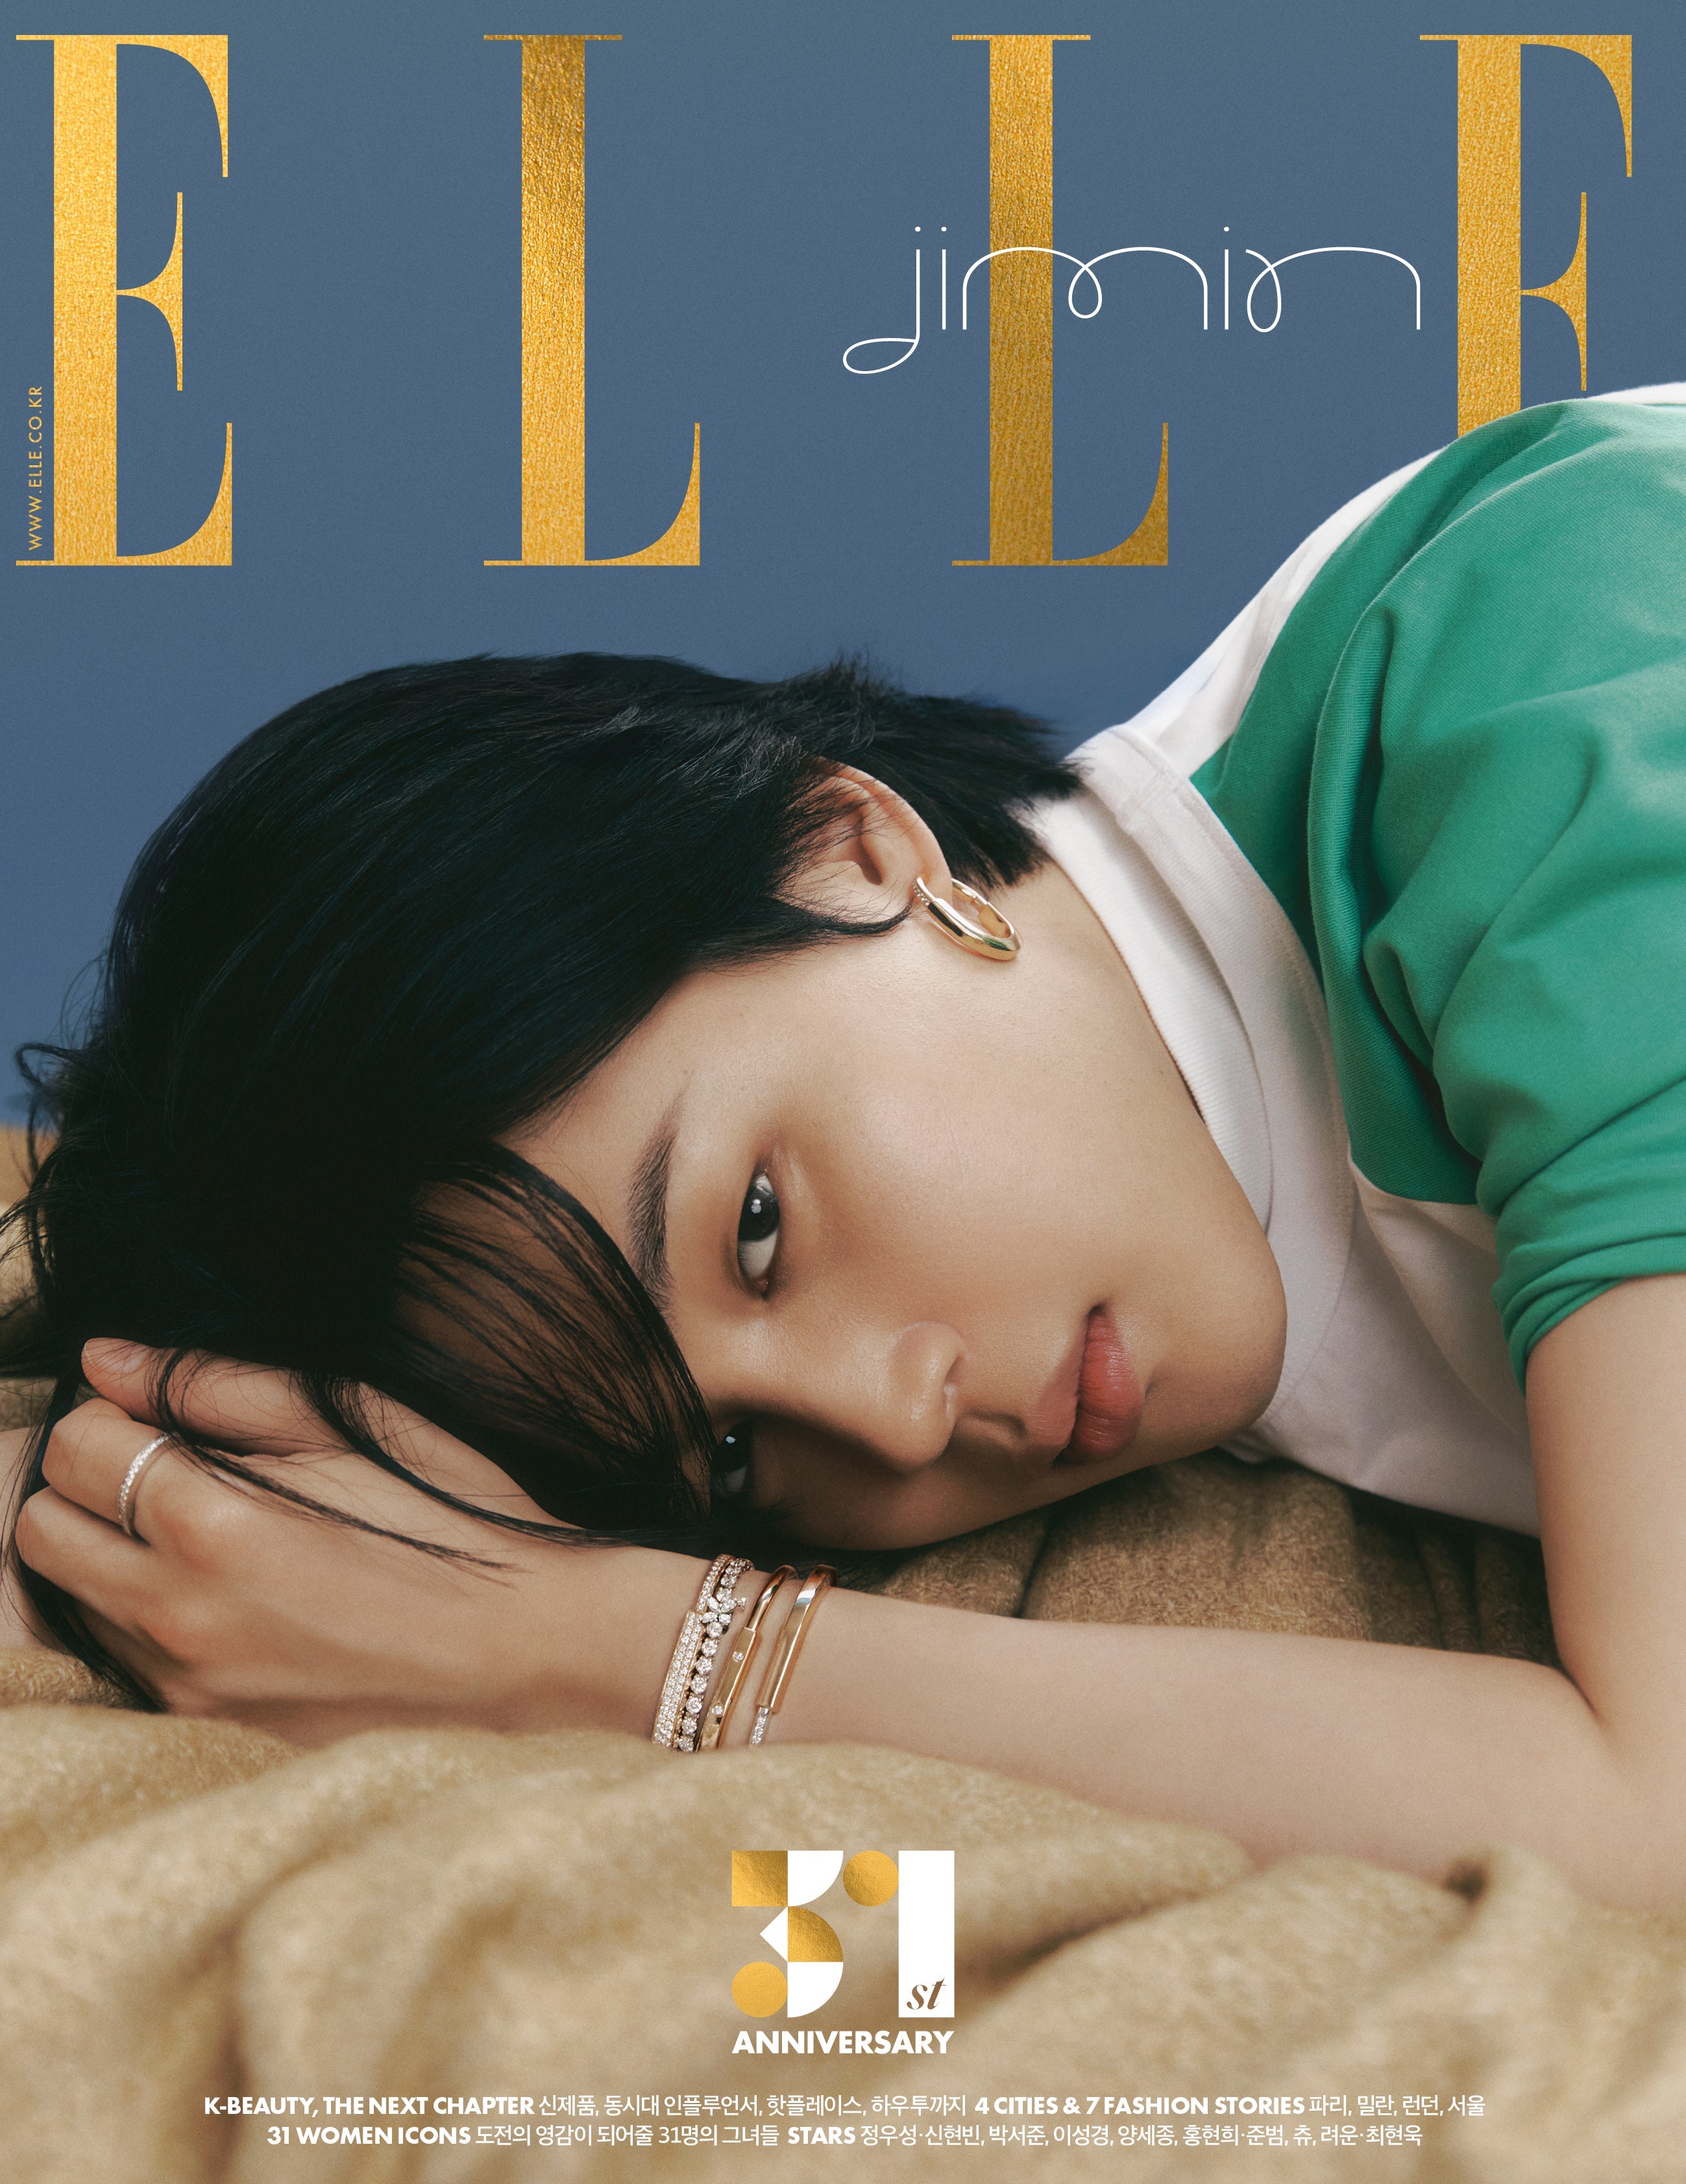 Elle U.S. June/July 2022 Covers (Elle U.S.)